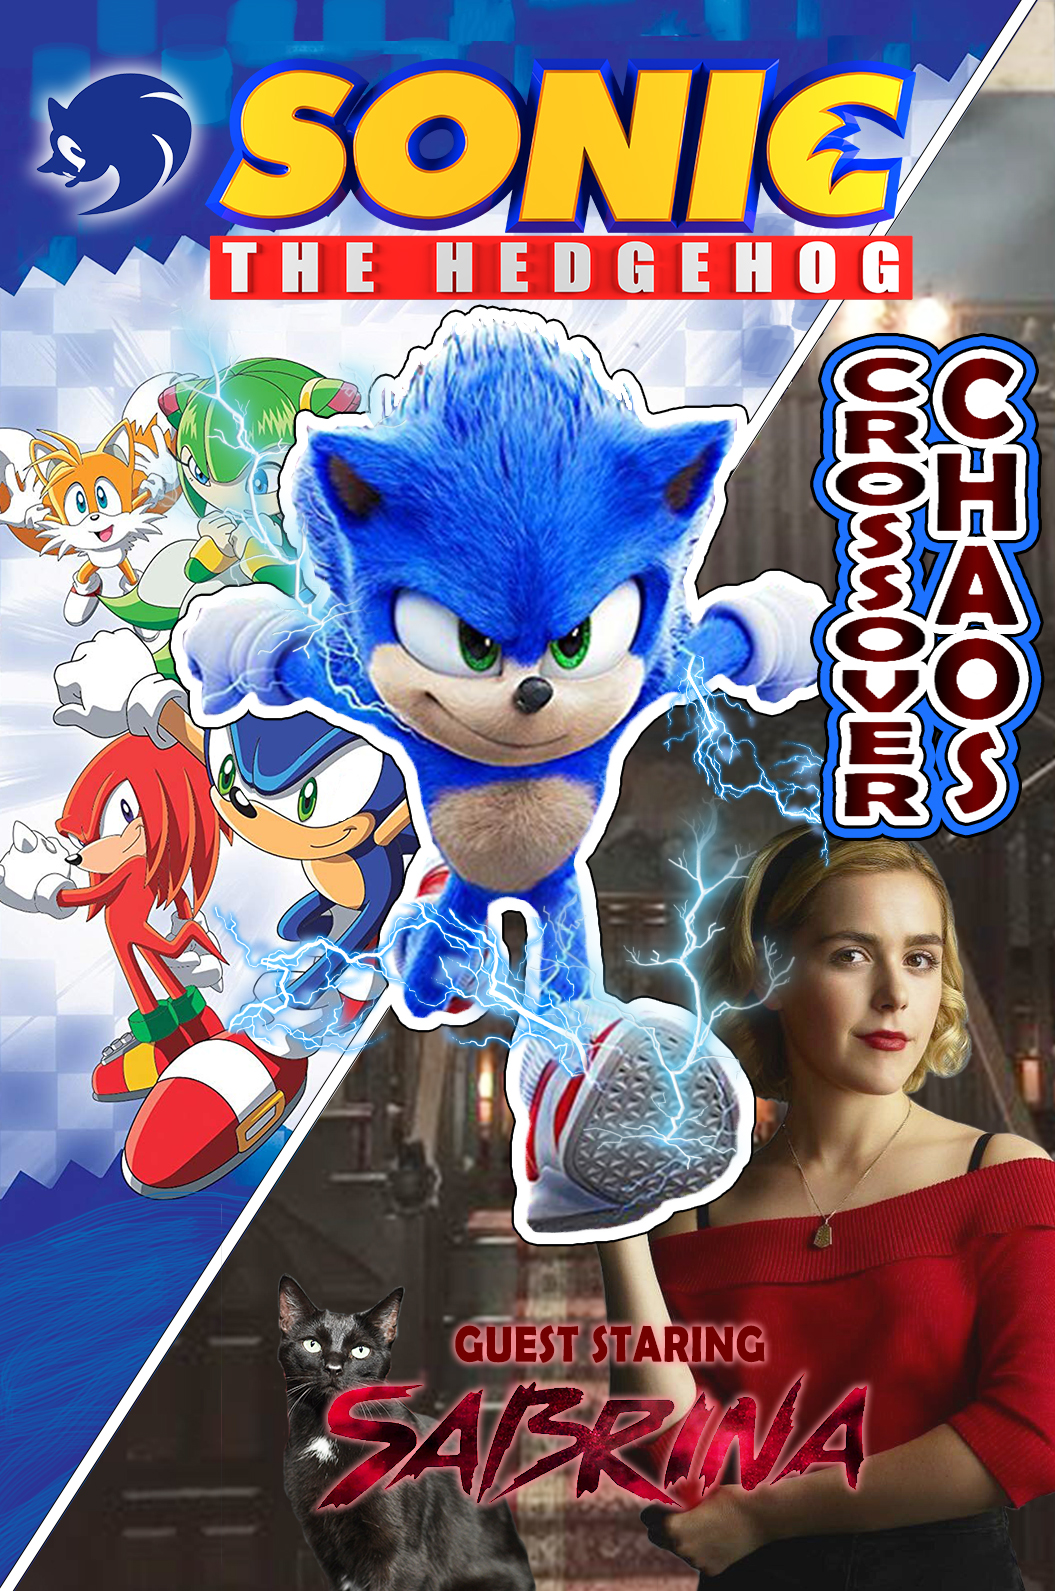 Super Sonic (Sonic 2 Movie Sequel Fanart) by 84greghamm35 on DeviantArt